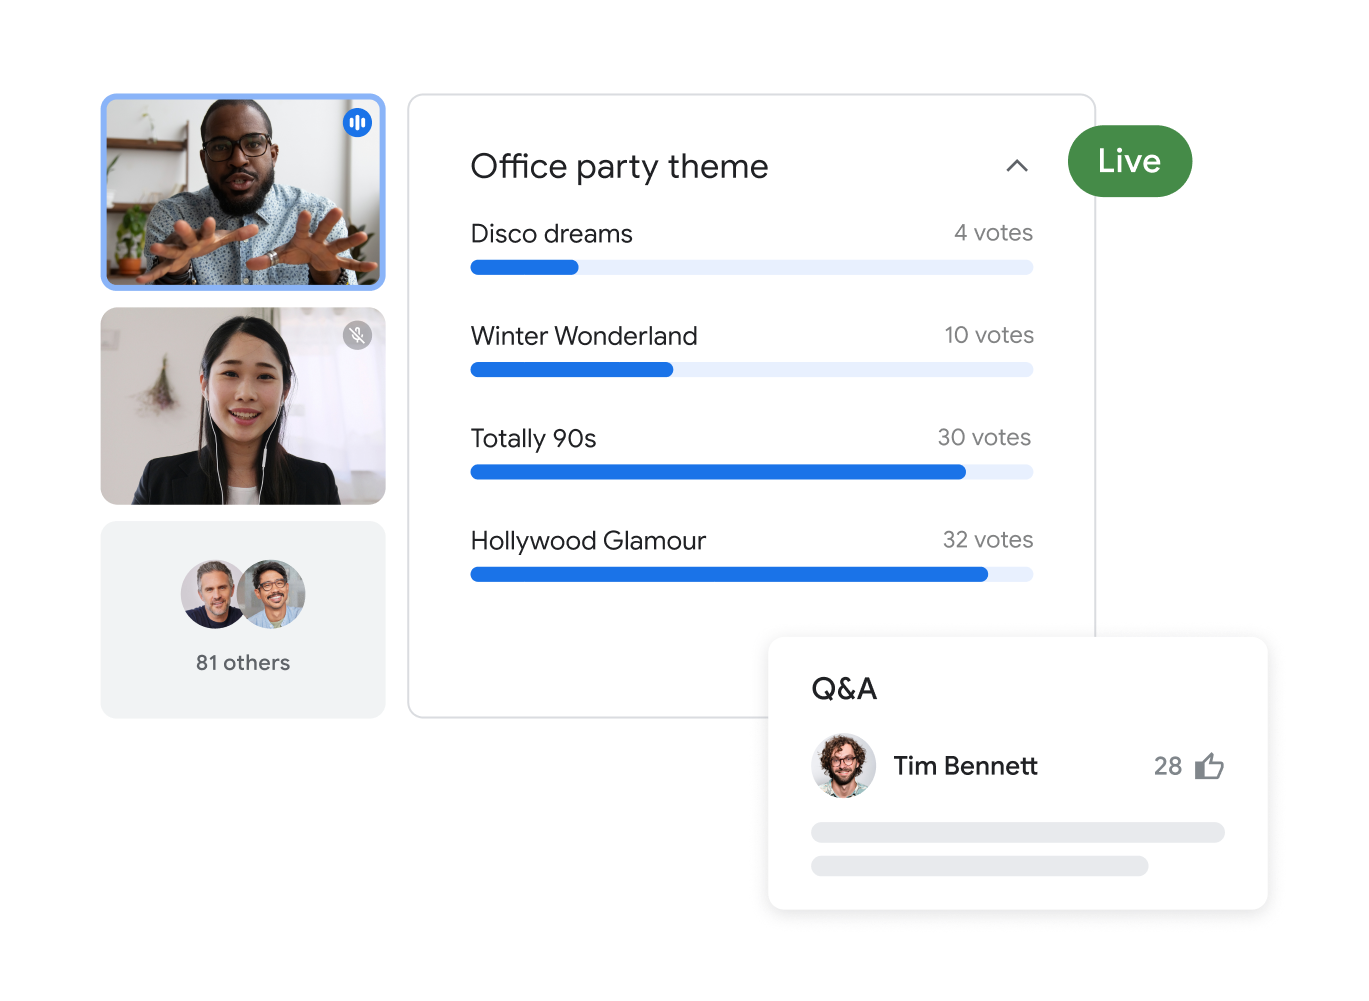 有 83 位参与者参加的 Google Meet 通话，画面上突出显示了两位用户，他们创建了有关办公室聚会主题的投票，还显示了投票结果。